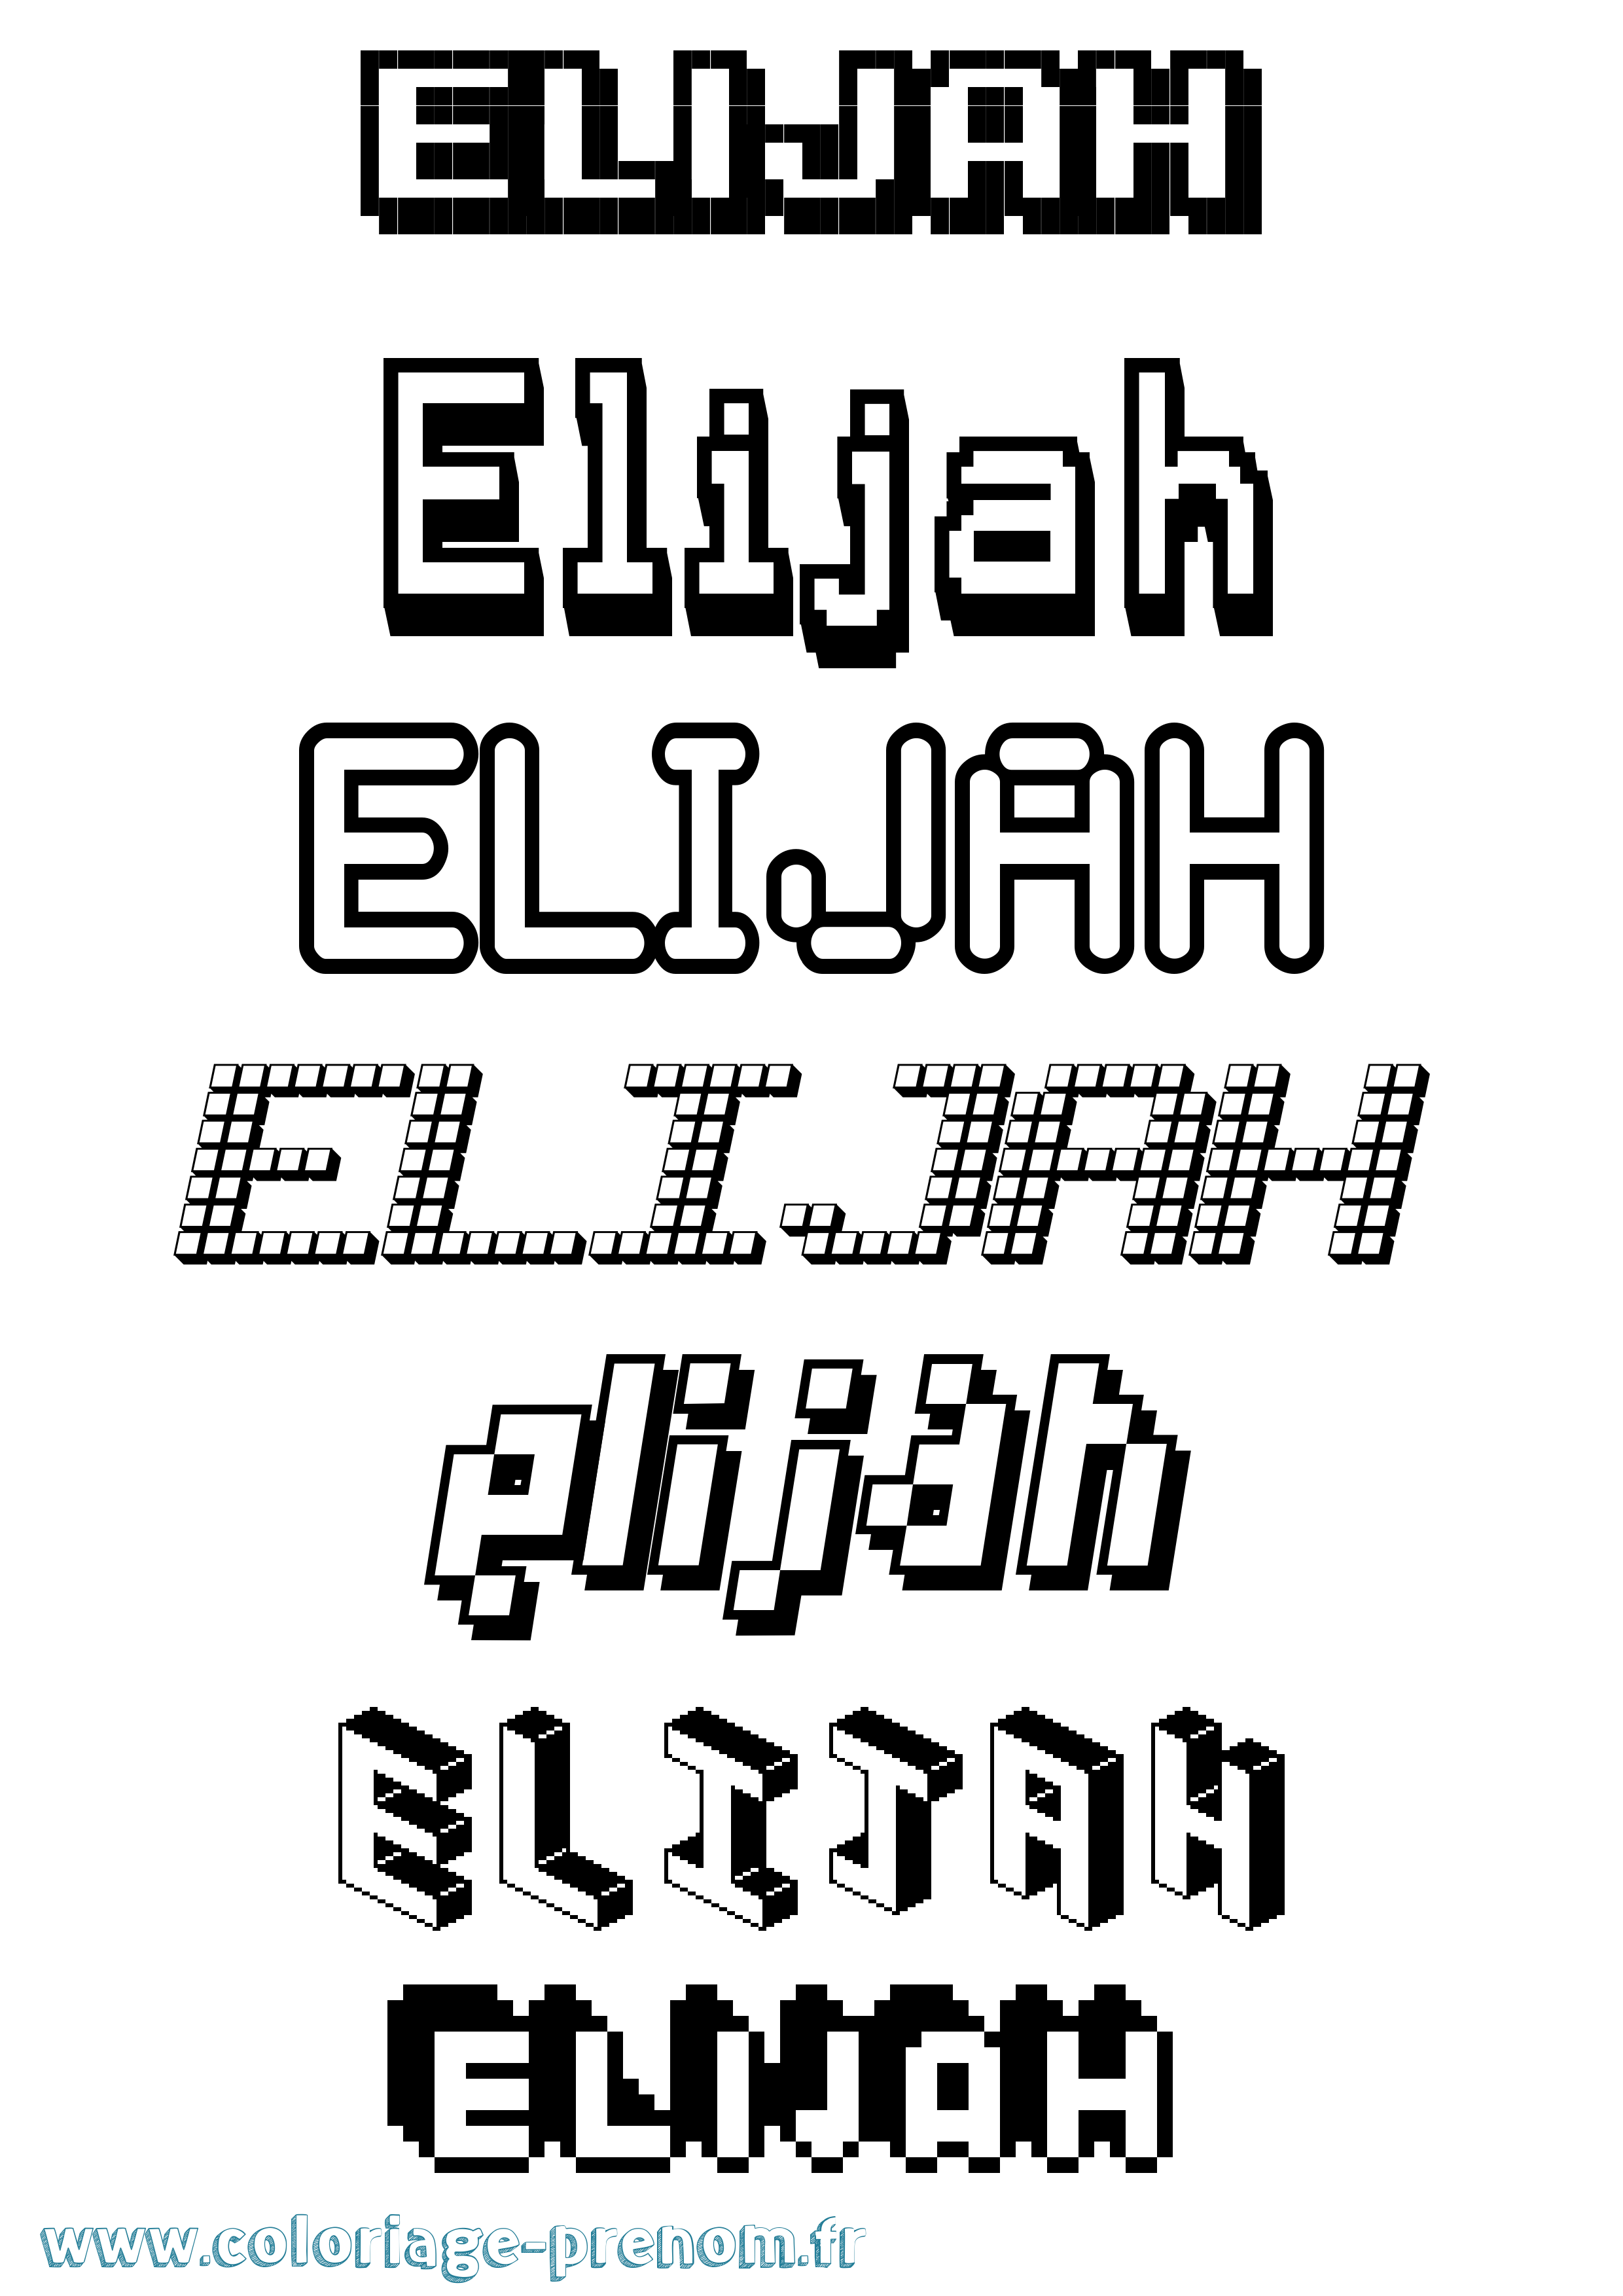 Coloriage prénom Elijah Pixel